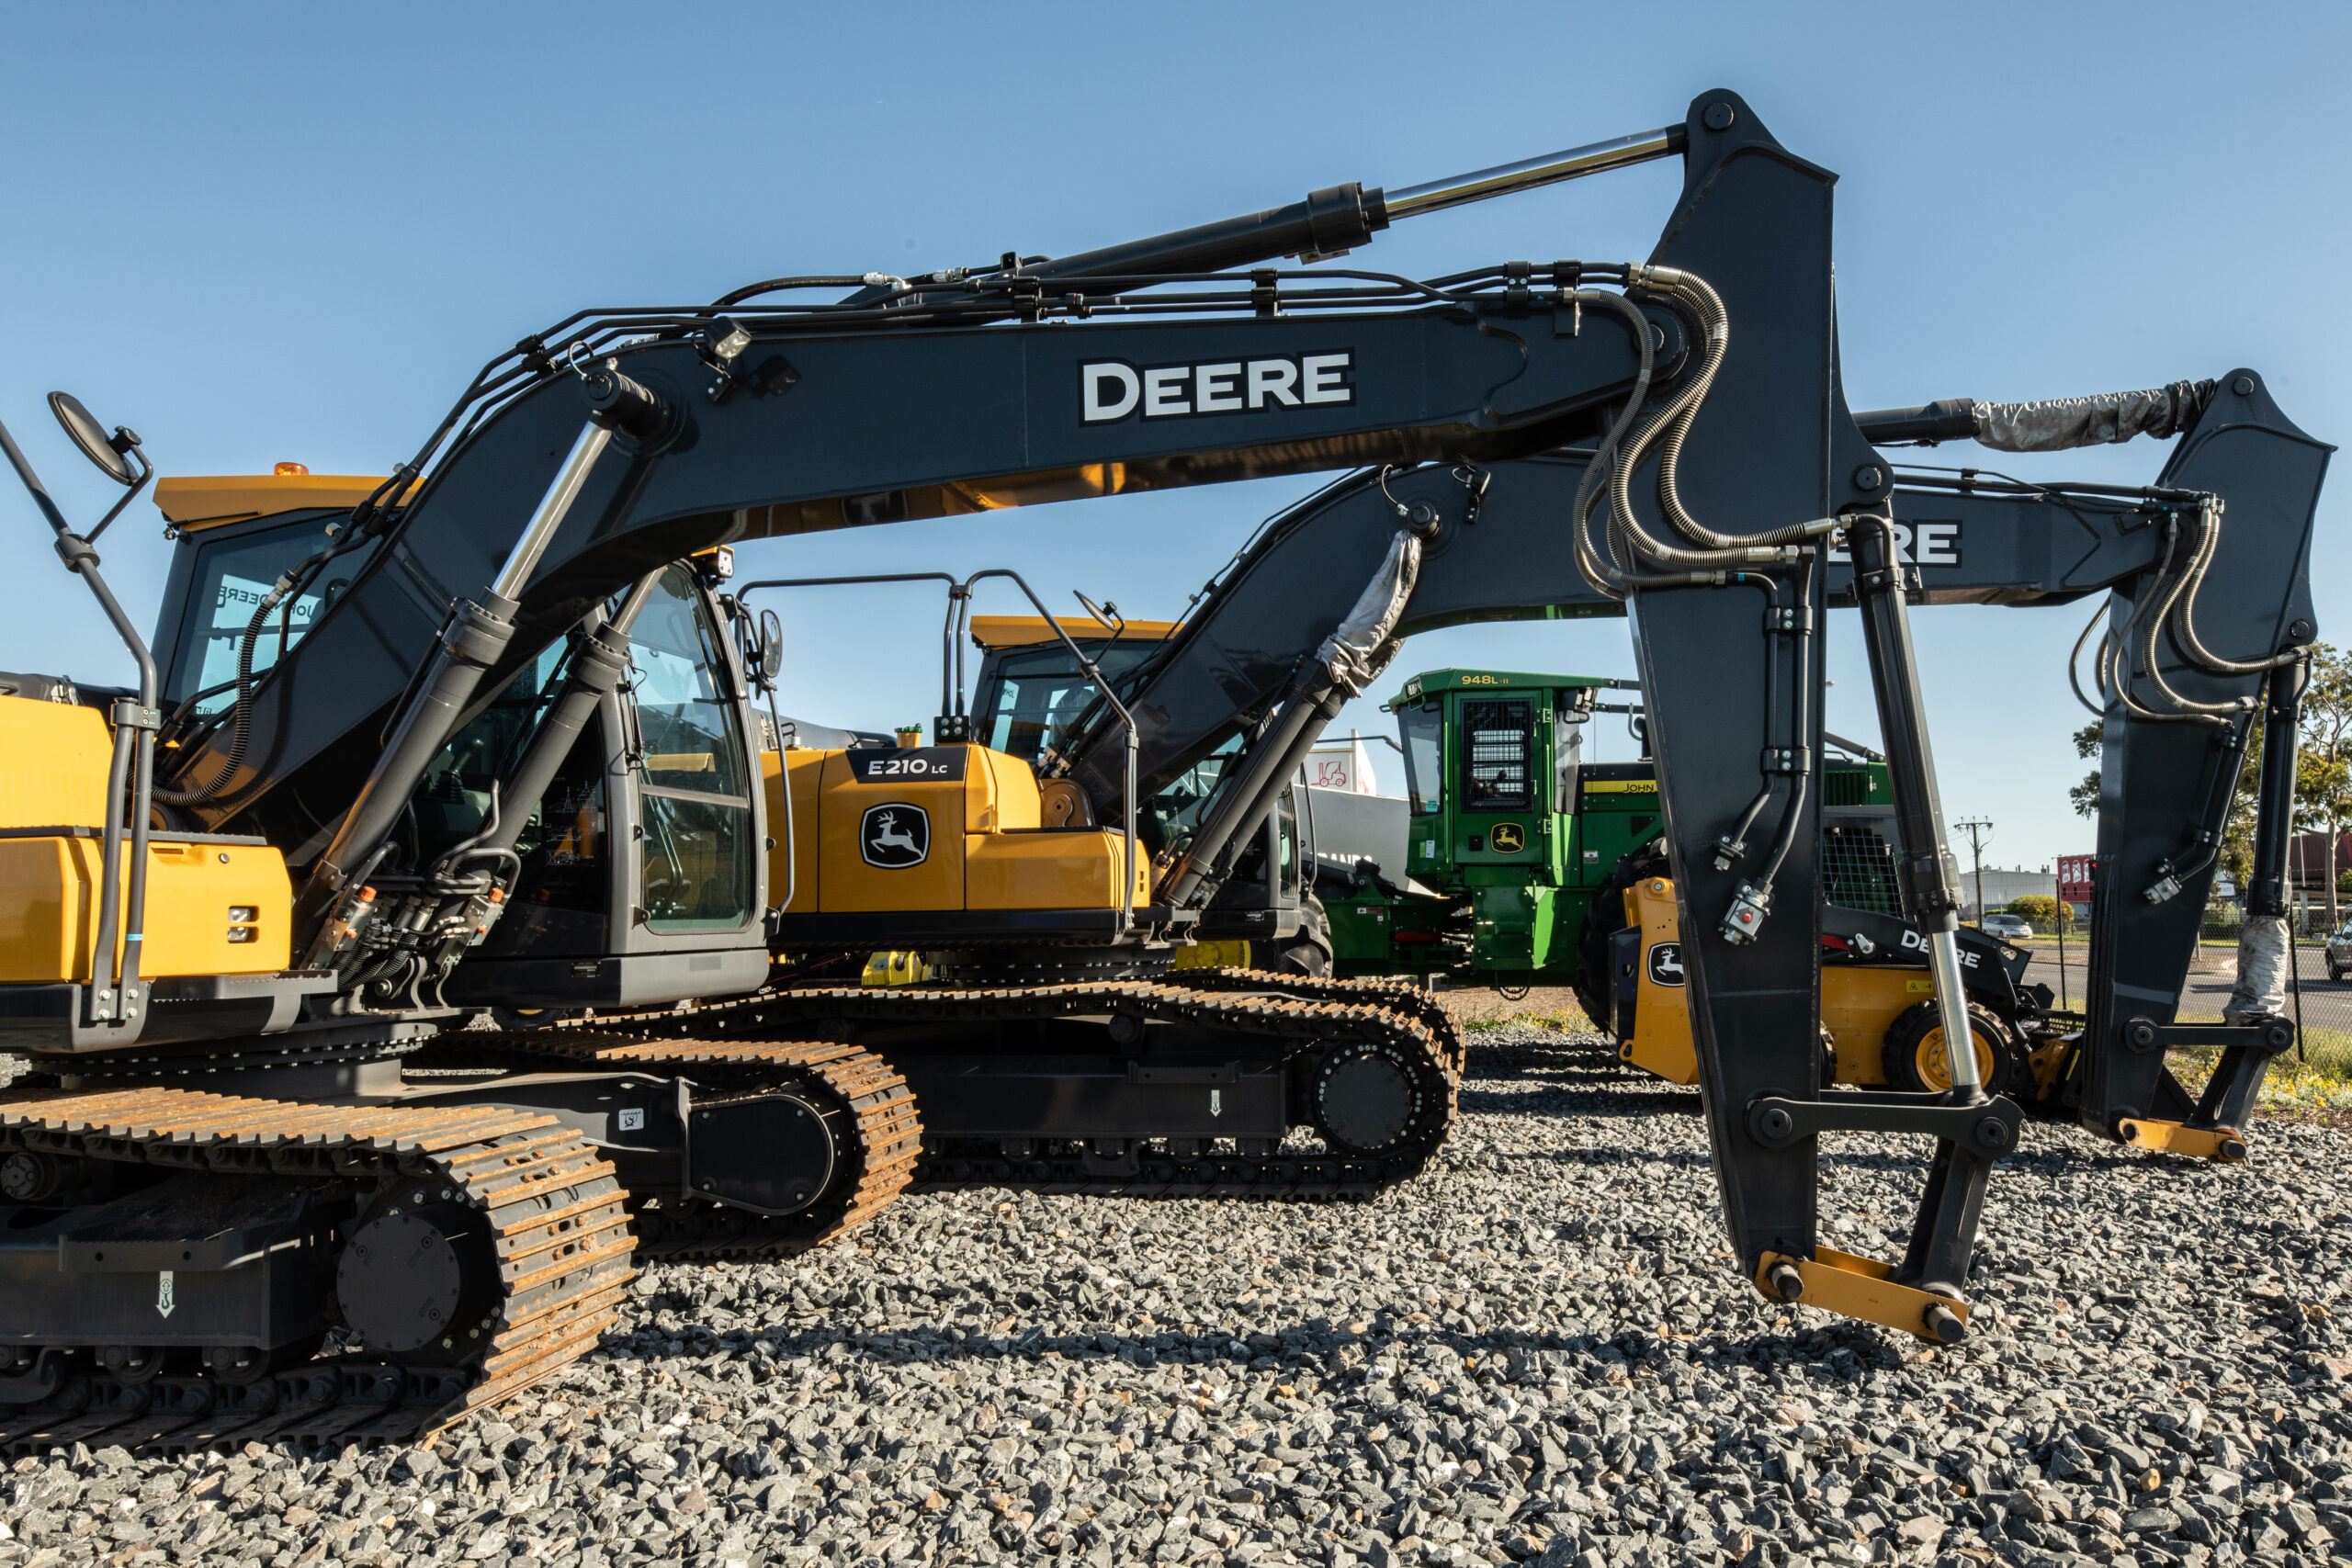 RDO Equipment John Deere excavators